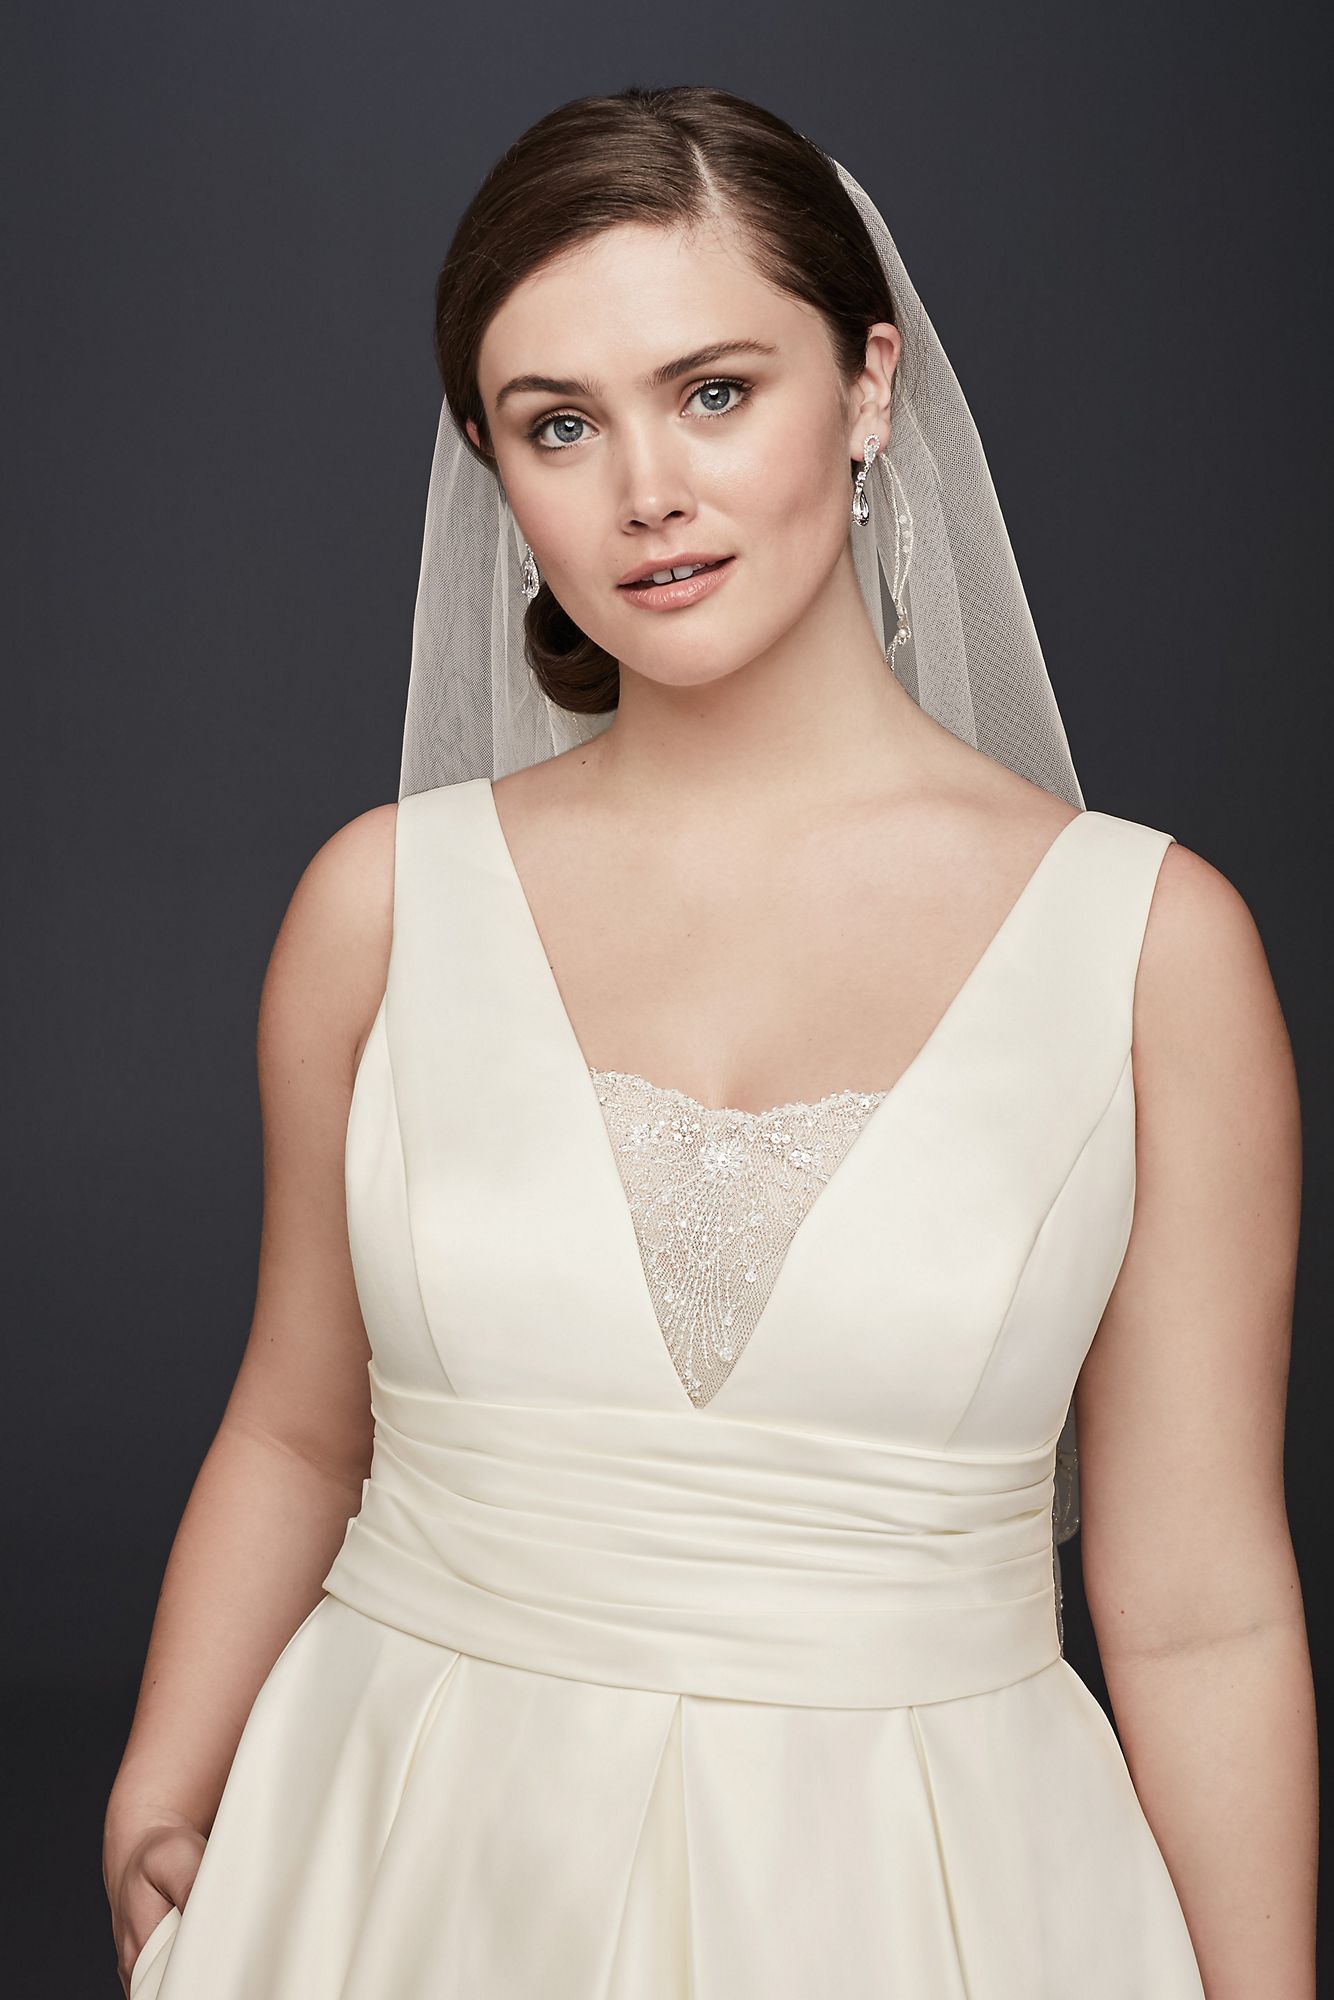 Satin Cummerbund Plus Size Wedding Dress   Collection 9V3848